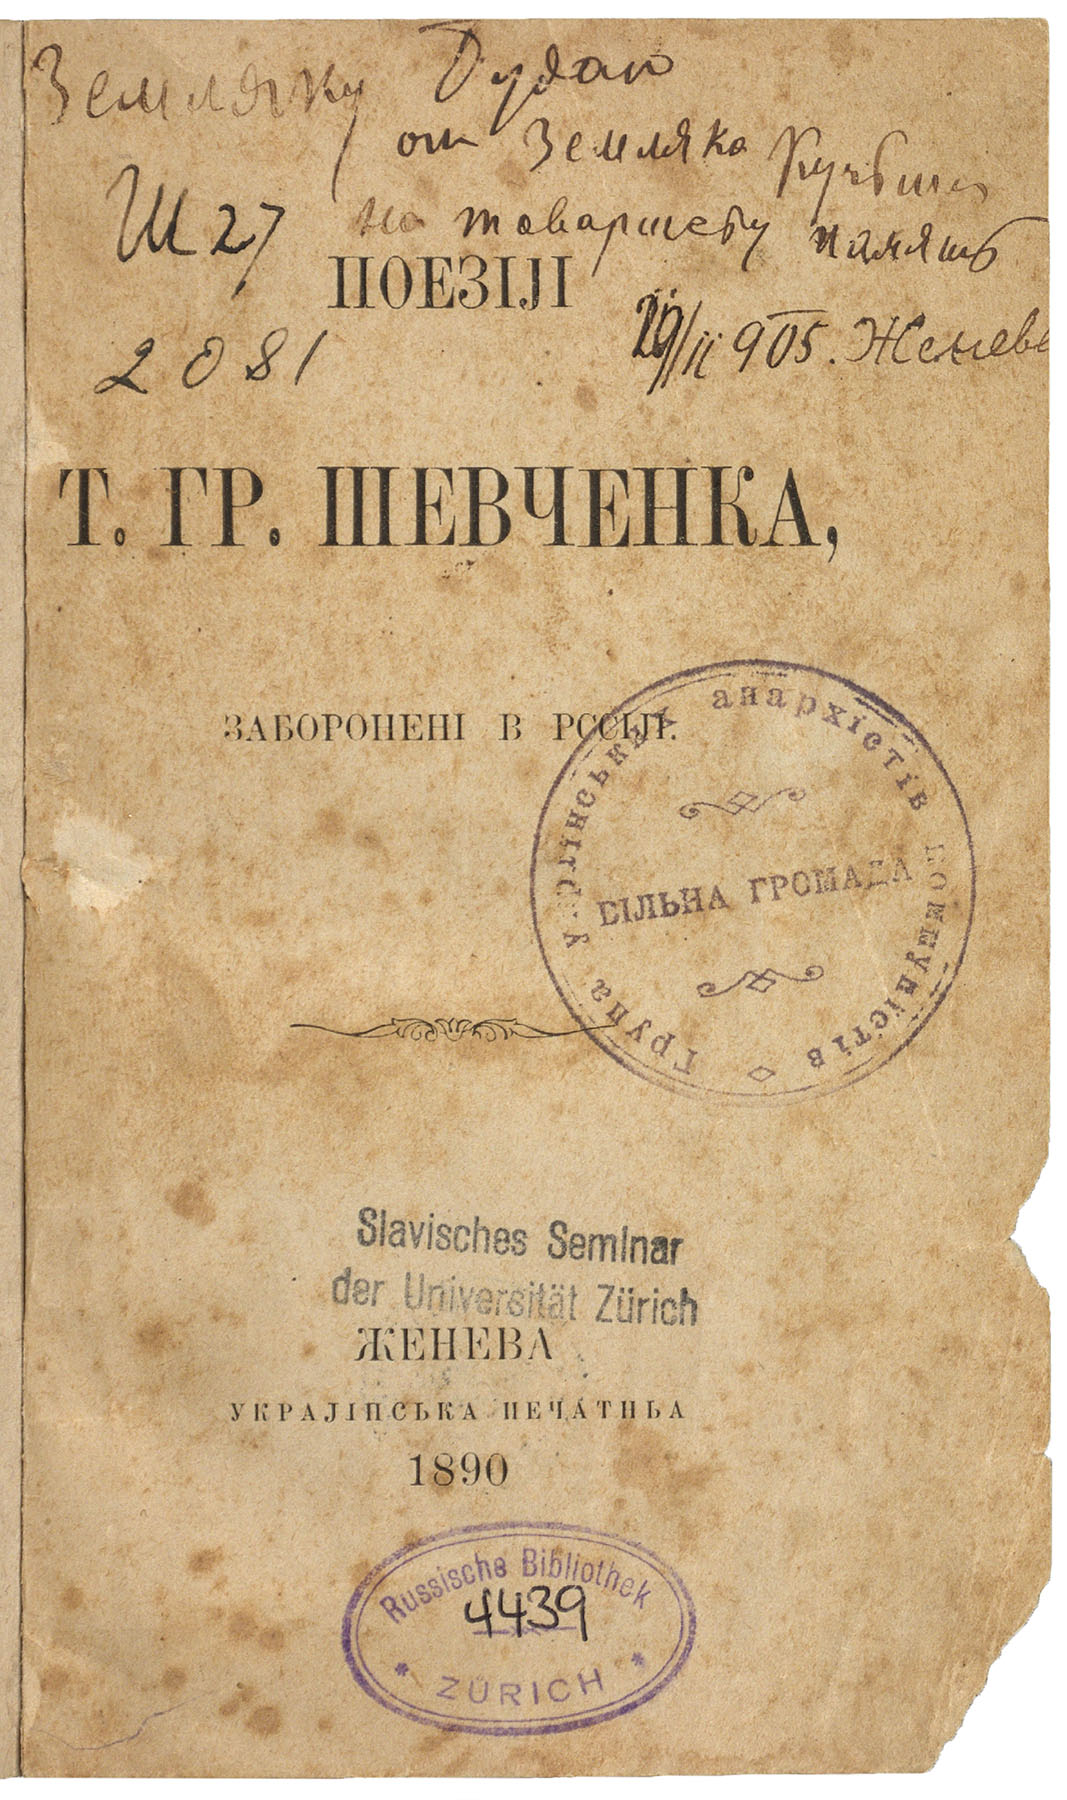 Poeziji by Taras Shevchenko, Geneva 1890; Shelf mark RBC 4439. (Image: ZB Zürich)